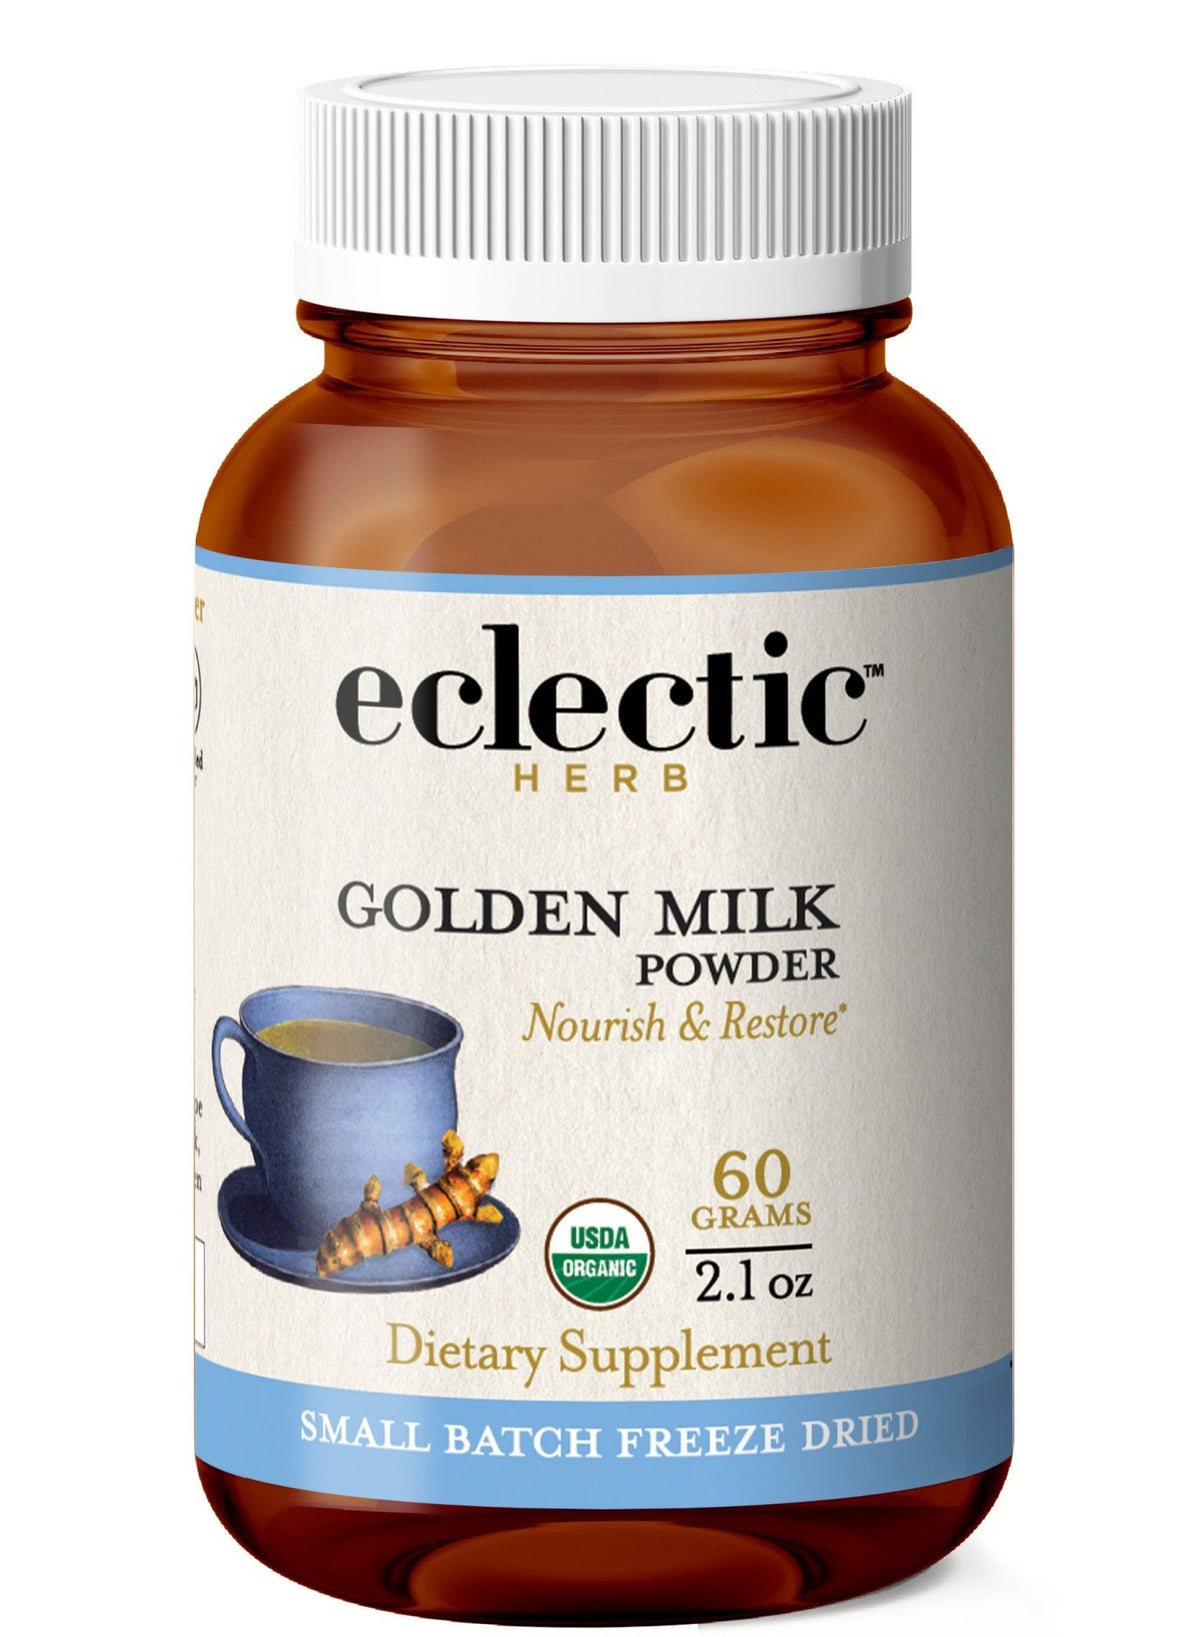 Eclectic Herb Golden Milk 2.1 oz (60 grams) Powder